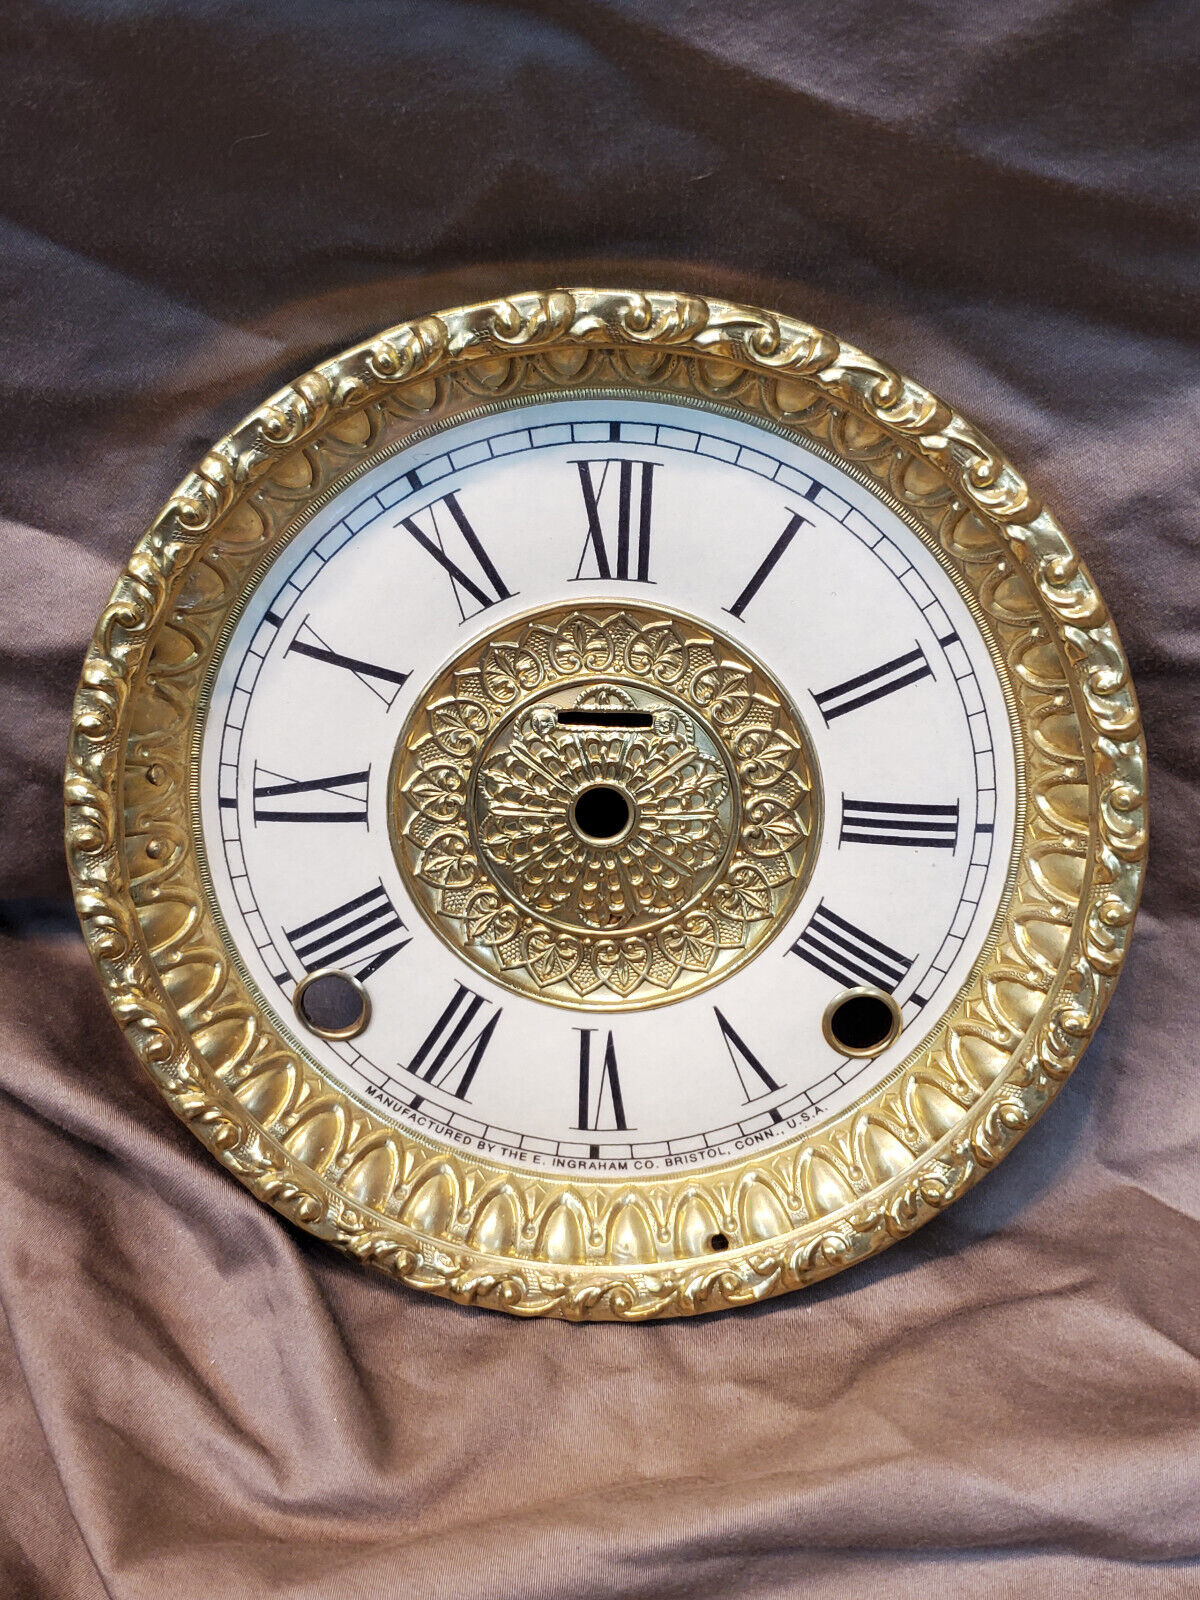 Restored Antique Ingraham Clock Dial and Bezel Refurbished